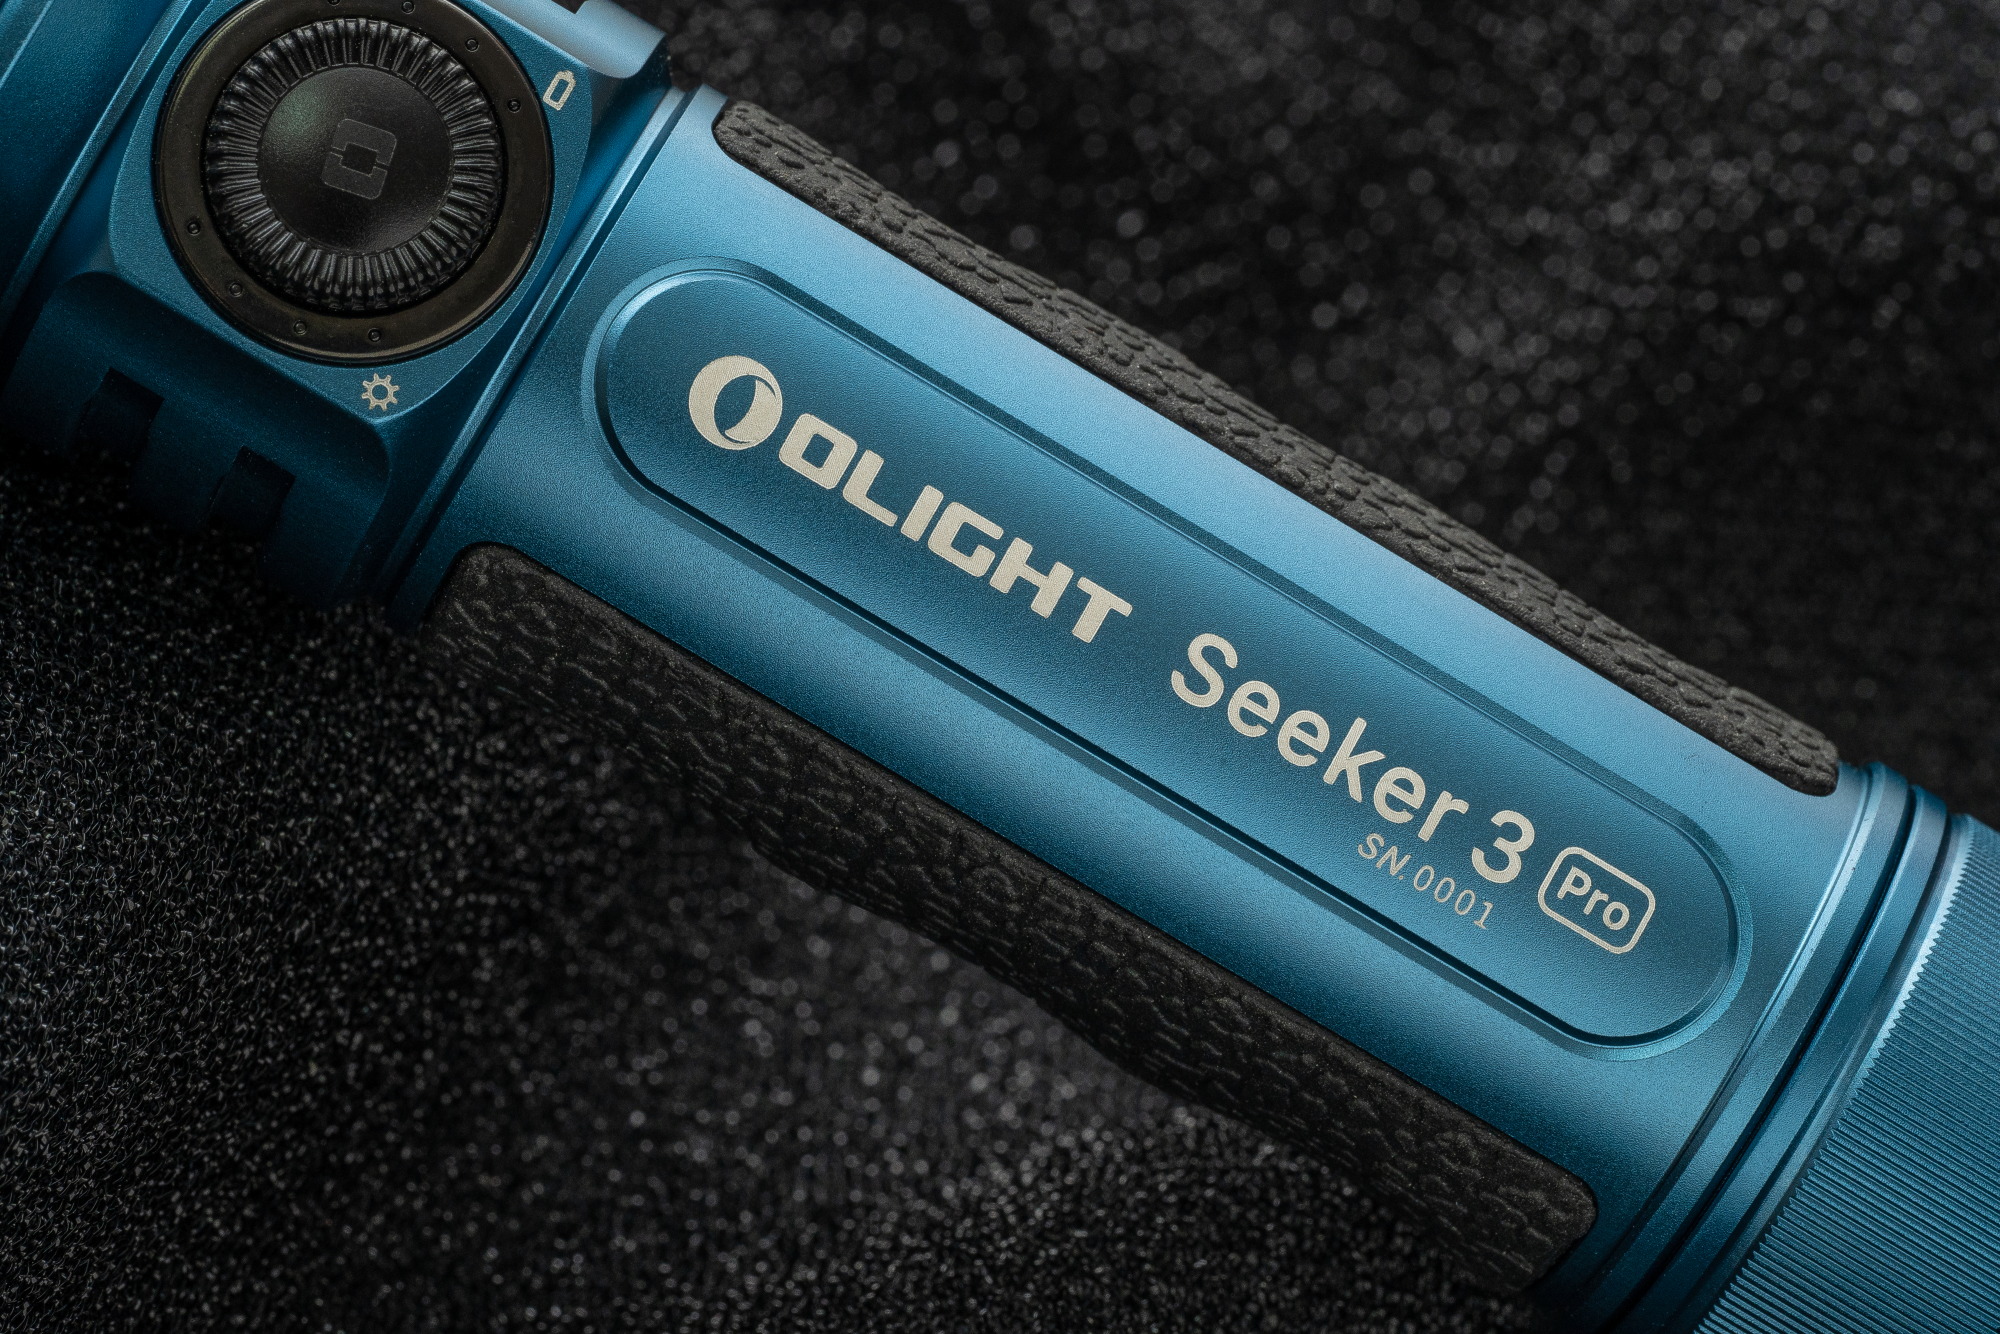 【限量湖水藍】Olight SEEKER 3 PRO 4200流明 250米 強泛光LED手電筒 電量顯示 防水 露營 登山